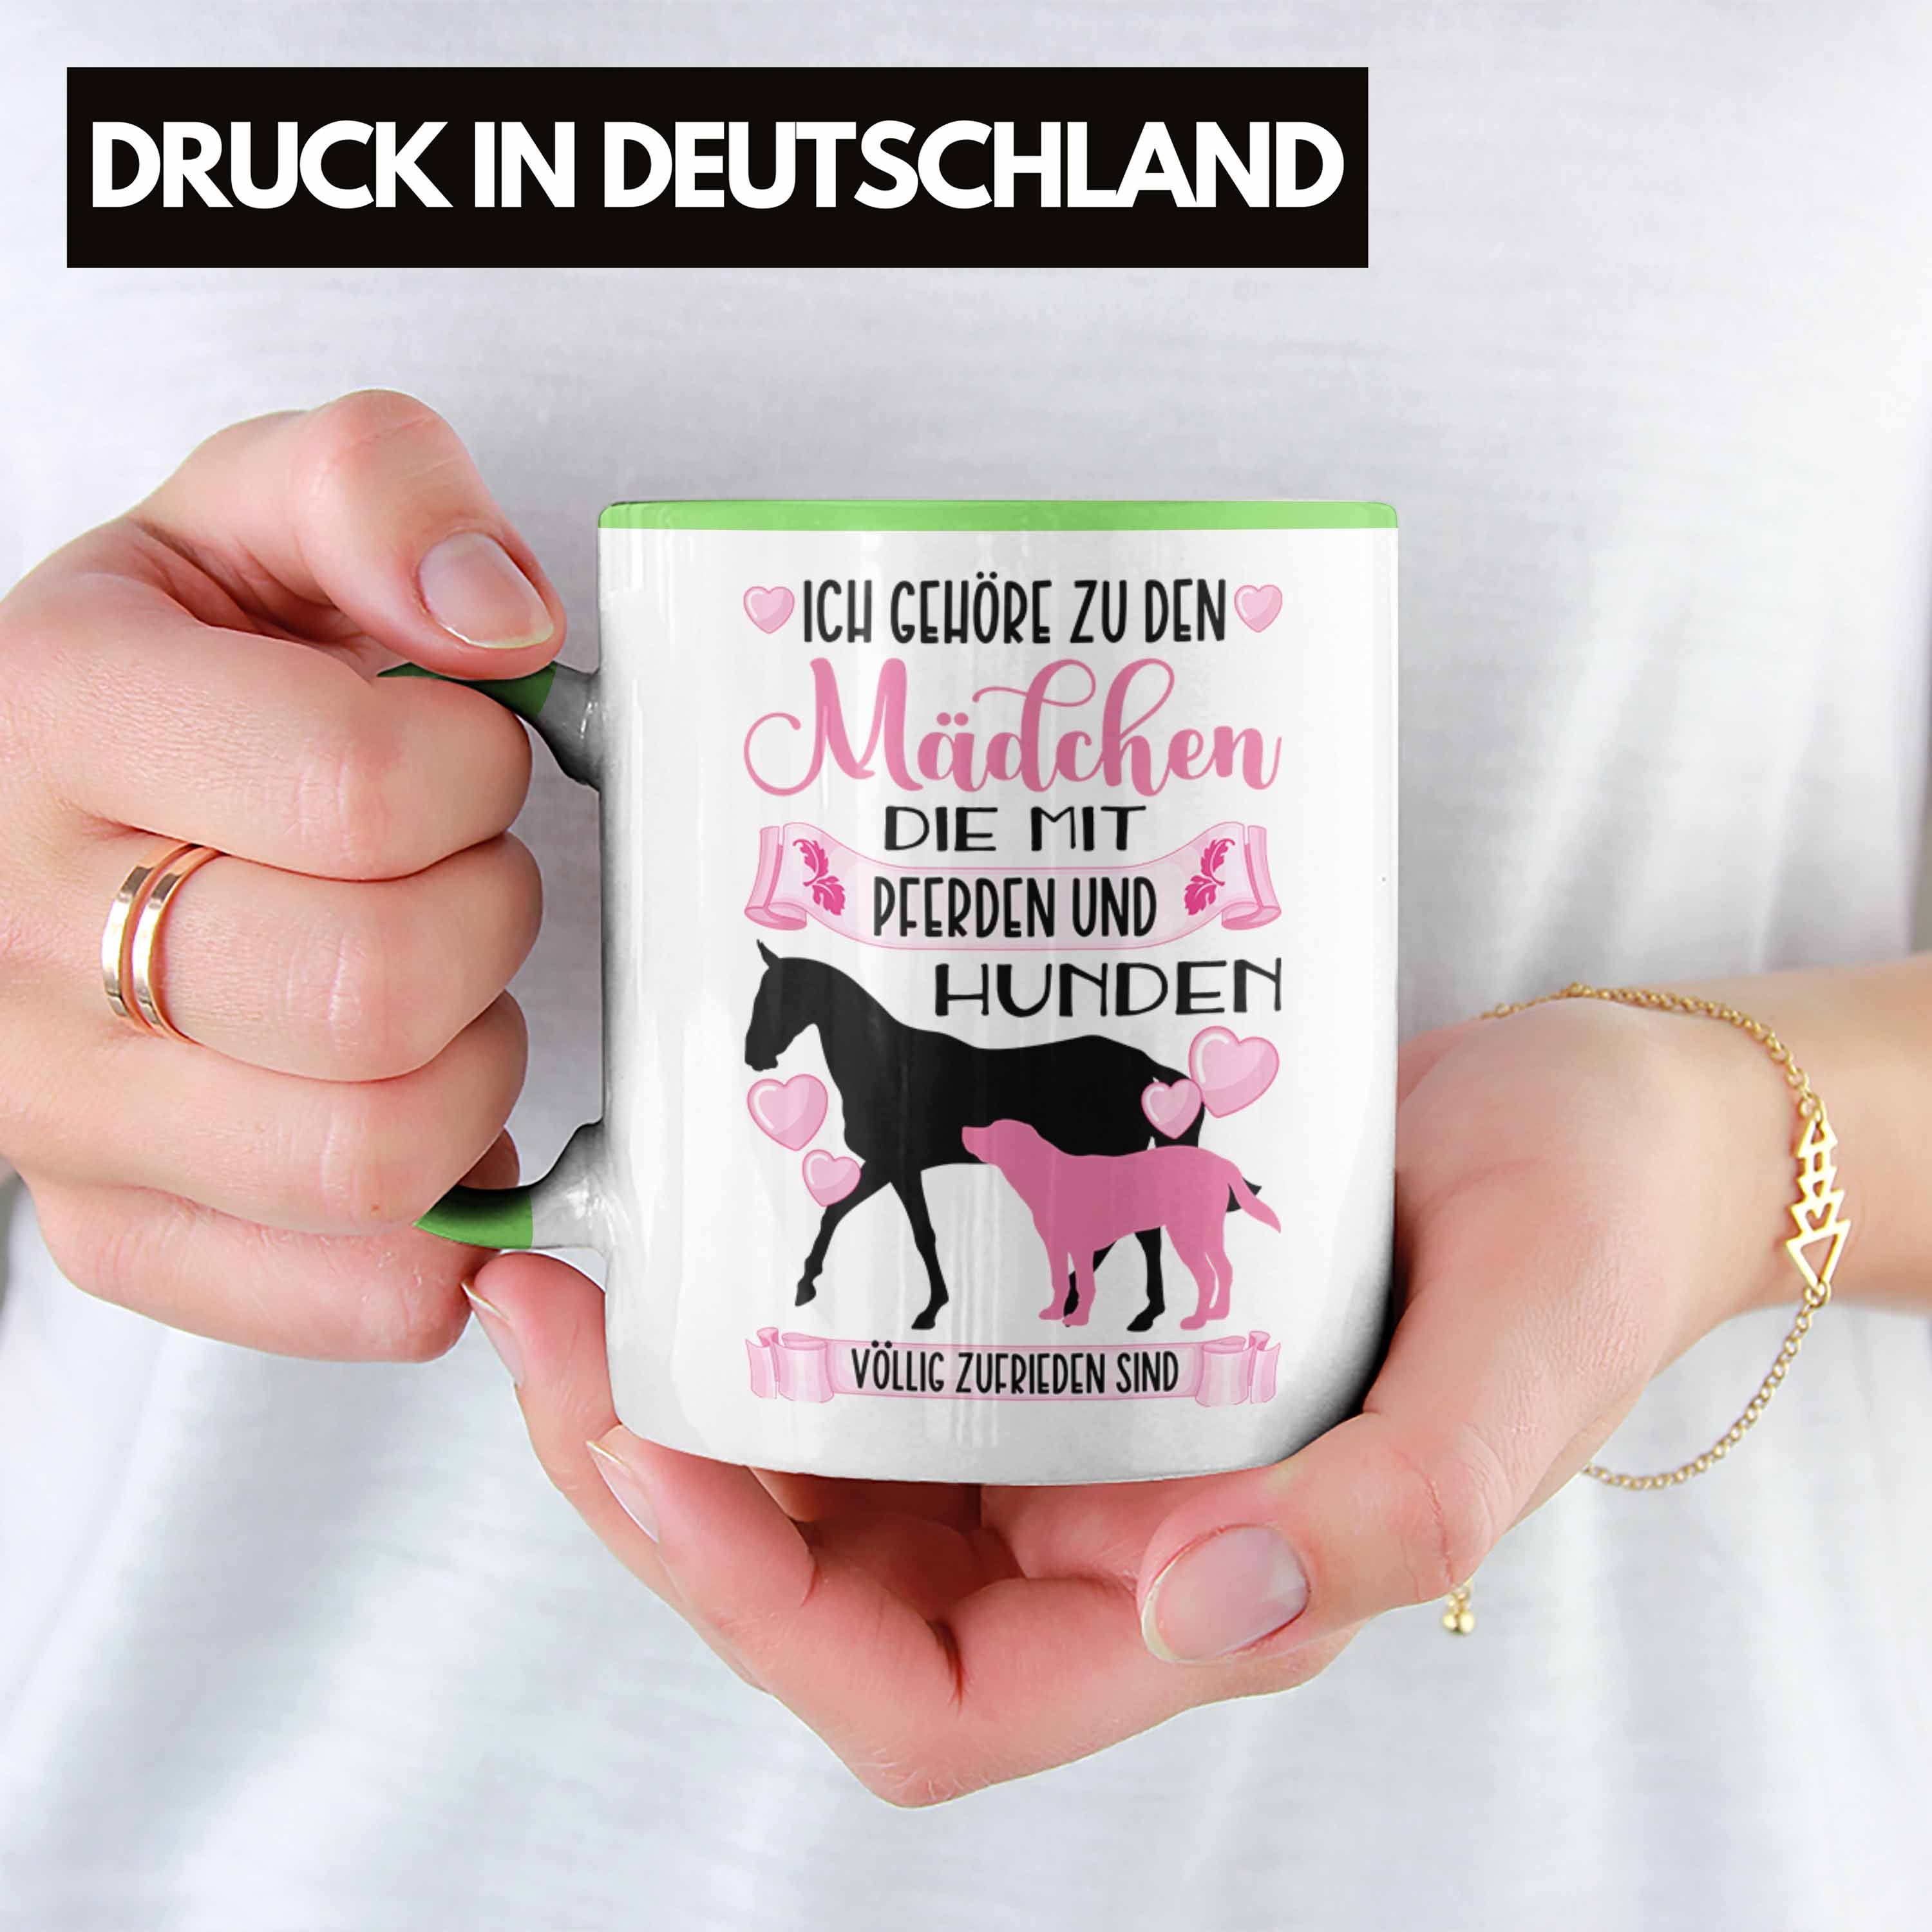 Trendation Tasse Trendation Spruch Kaffeetasse - Geschenkidee Reiterin Mädchen Rosa Hund Lustiger Reiten Grün Geschenk Pferd Tasse